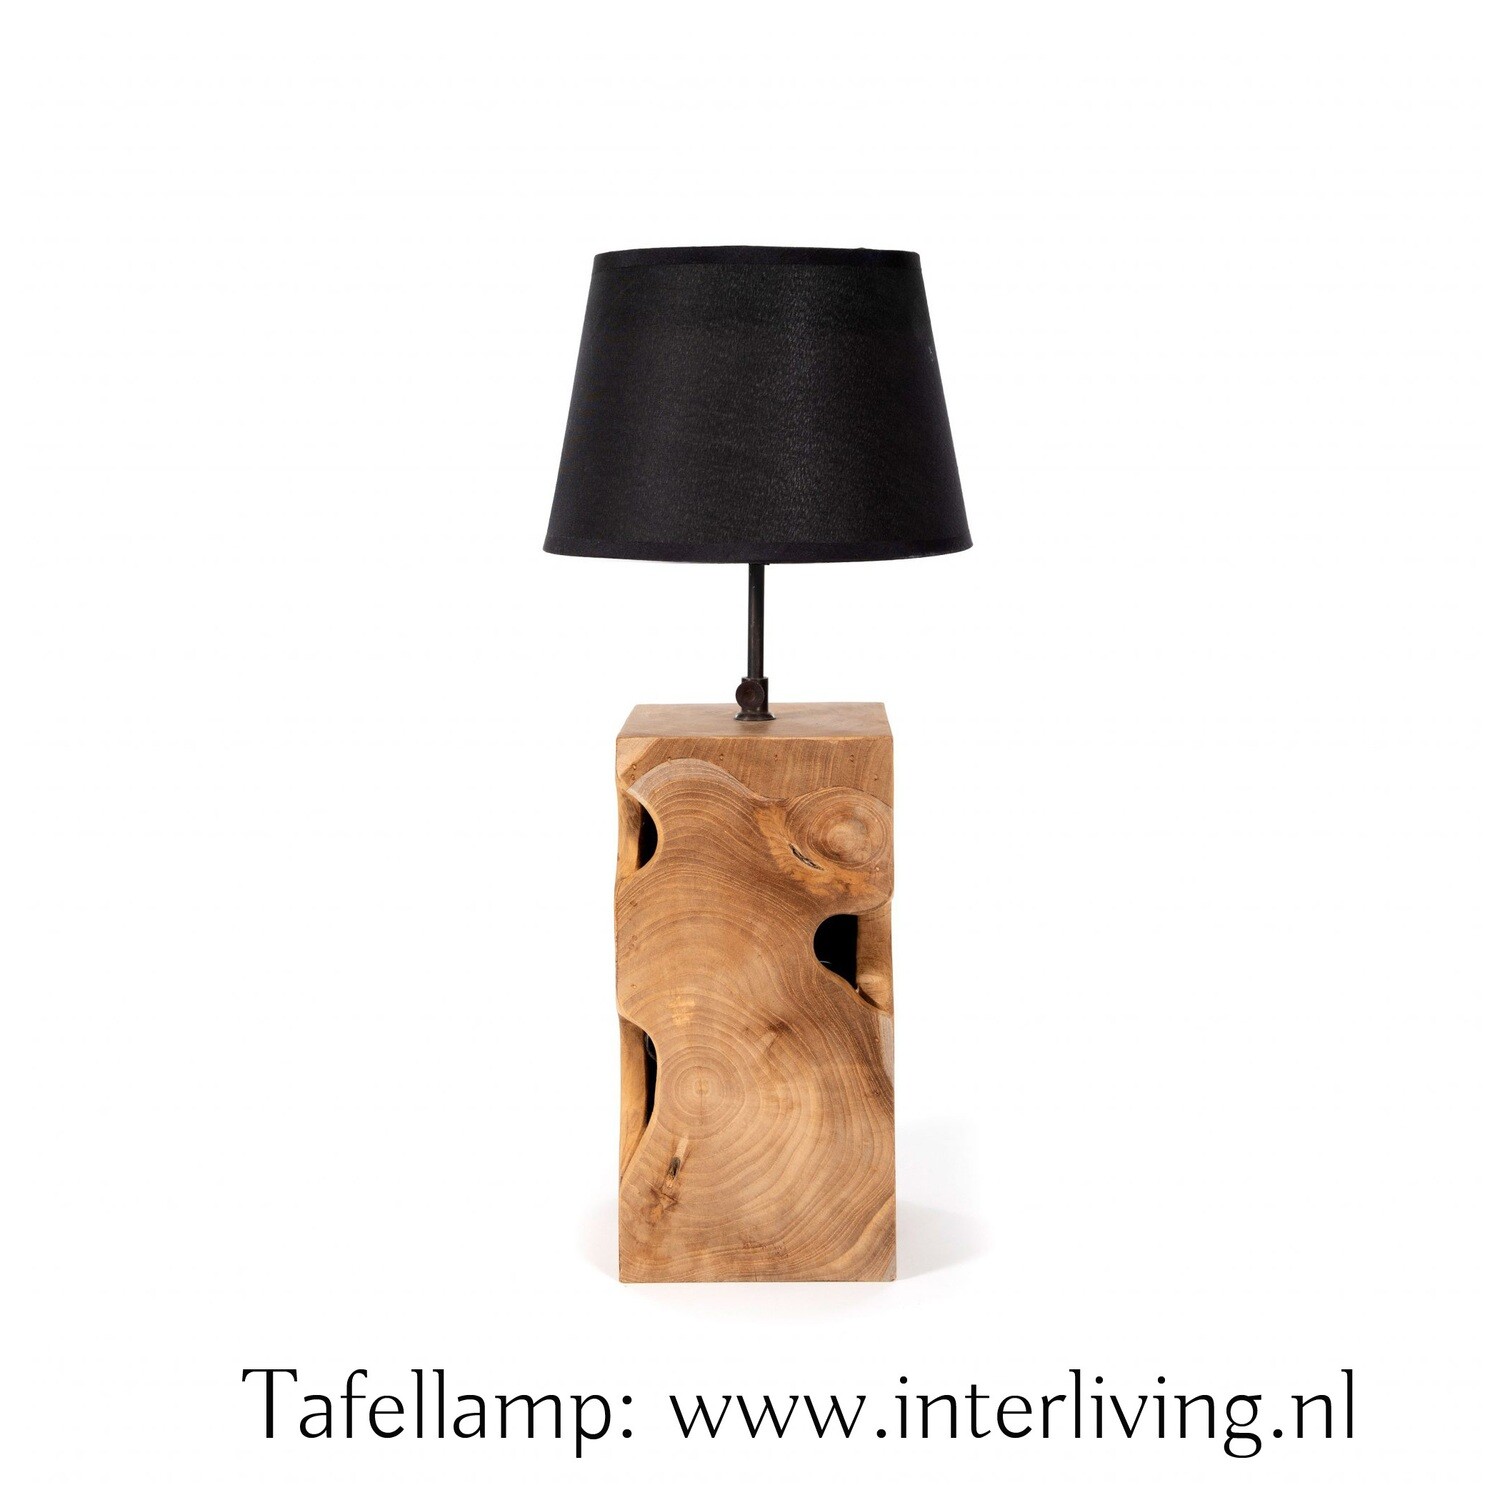 Tafellamp lampenvoet van robuust teakhout met organische vormen - lampvoet van naturel kleur/ onbehandeld & glad geschuurd